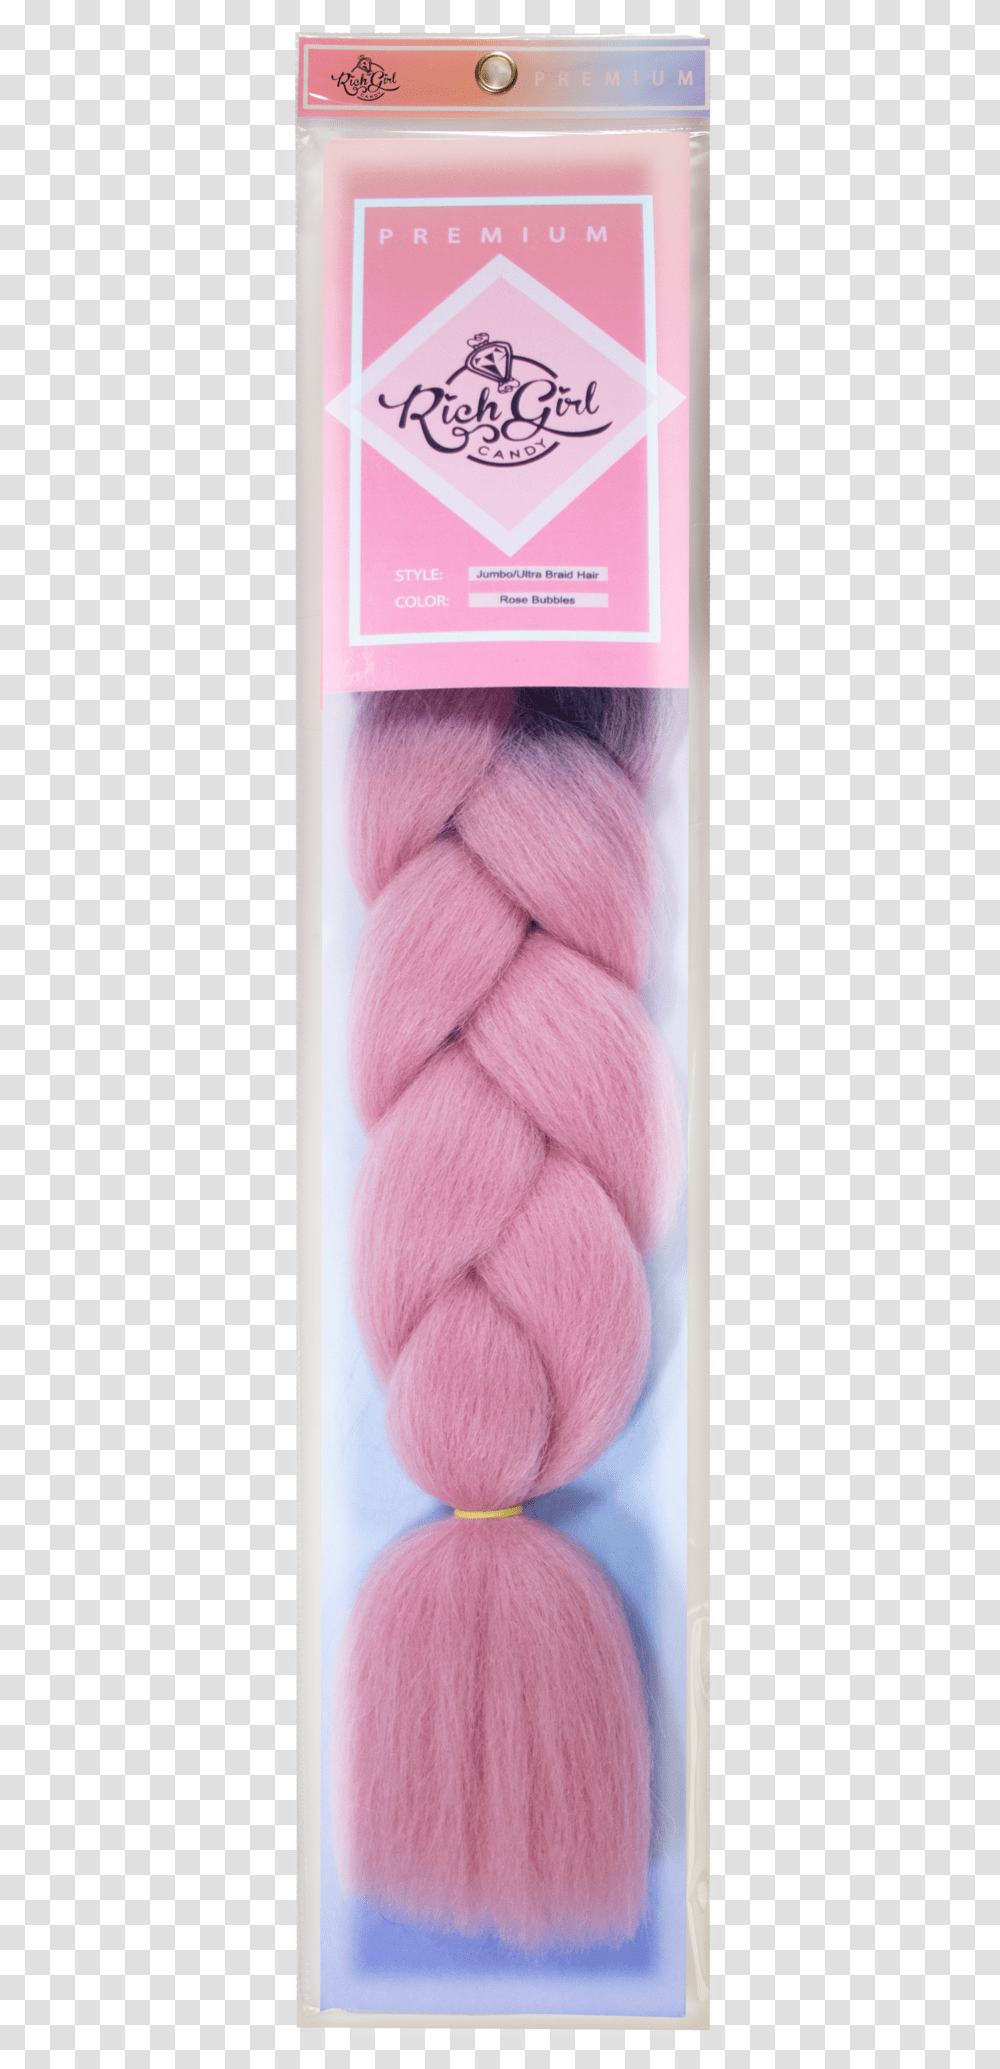 Thread, Wool, Yarn Transparent Png